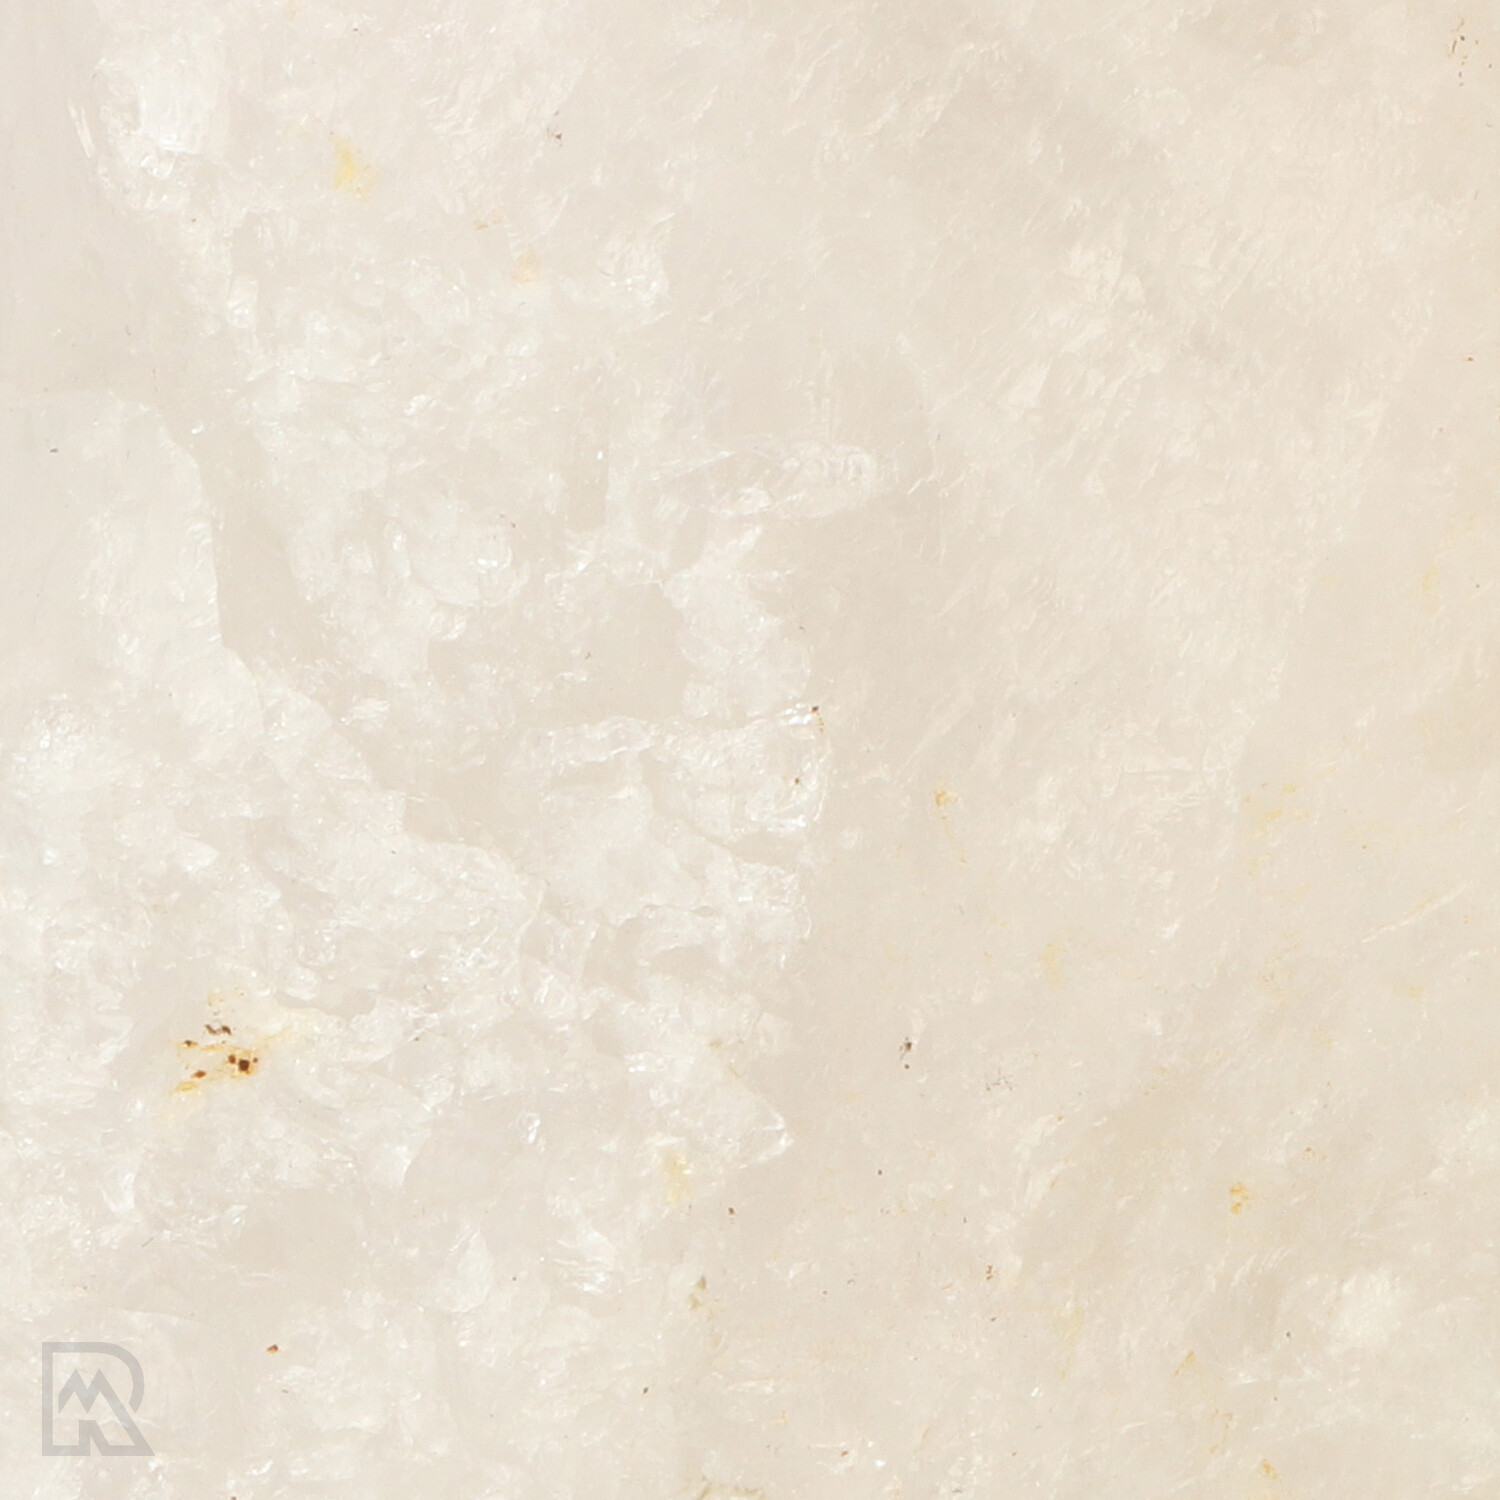 bergkristal-zeeppompje-brazilie-zoom